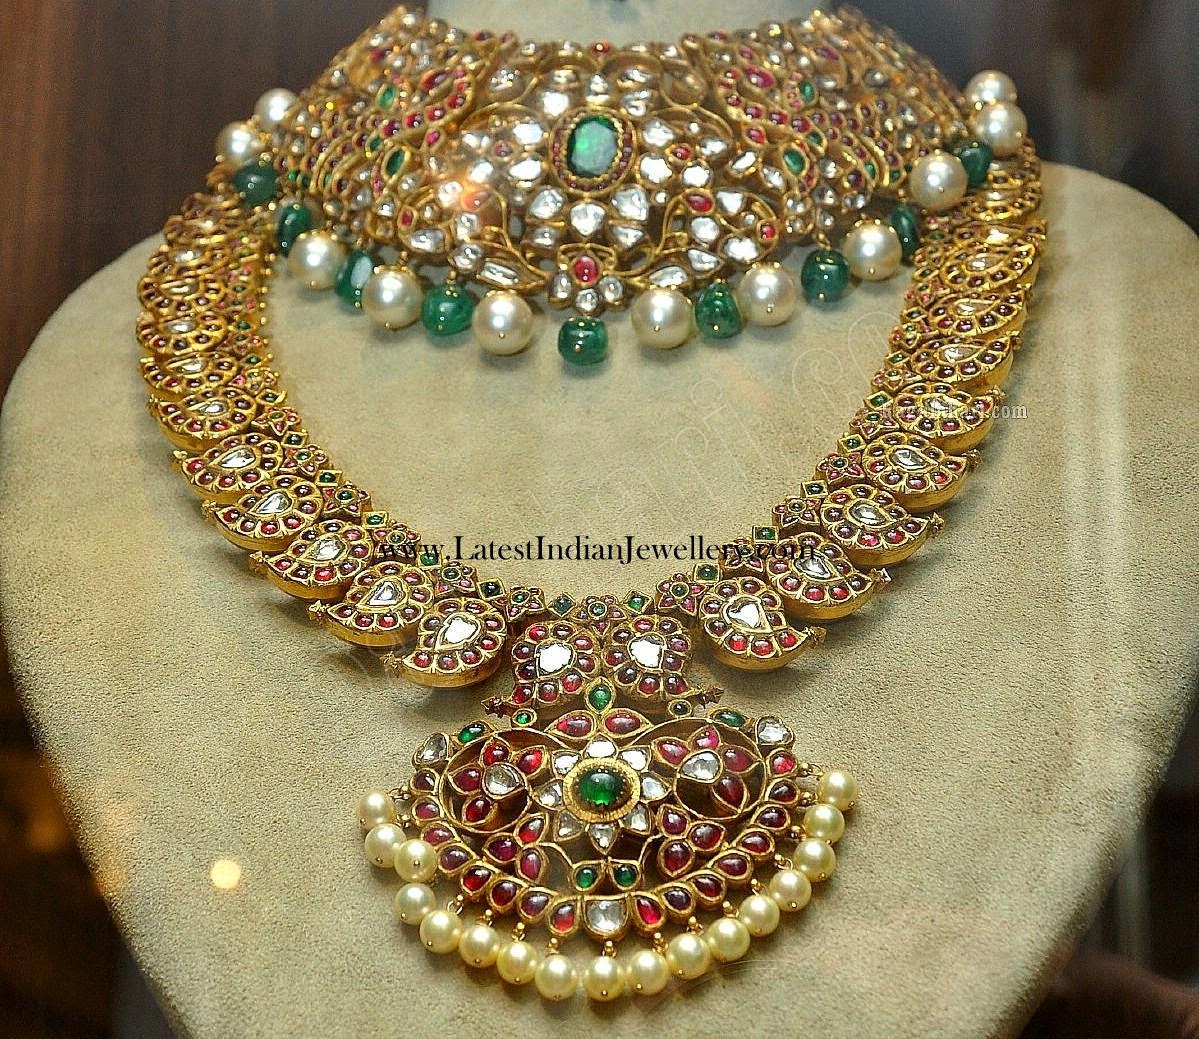 Bridal Manga Malai and Polki Choker Necklace - Latest Indian Jewellery